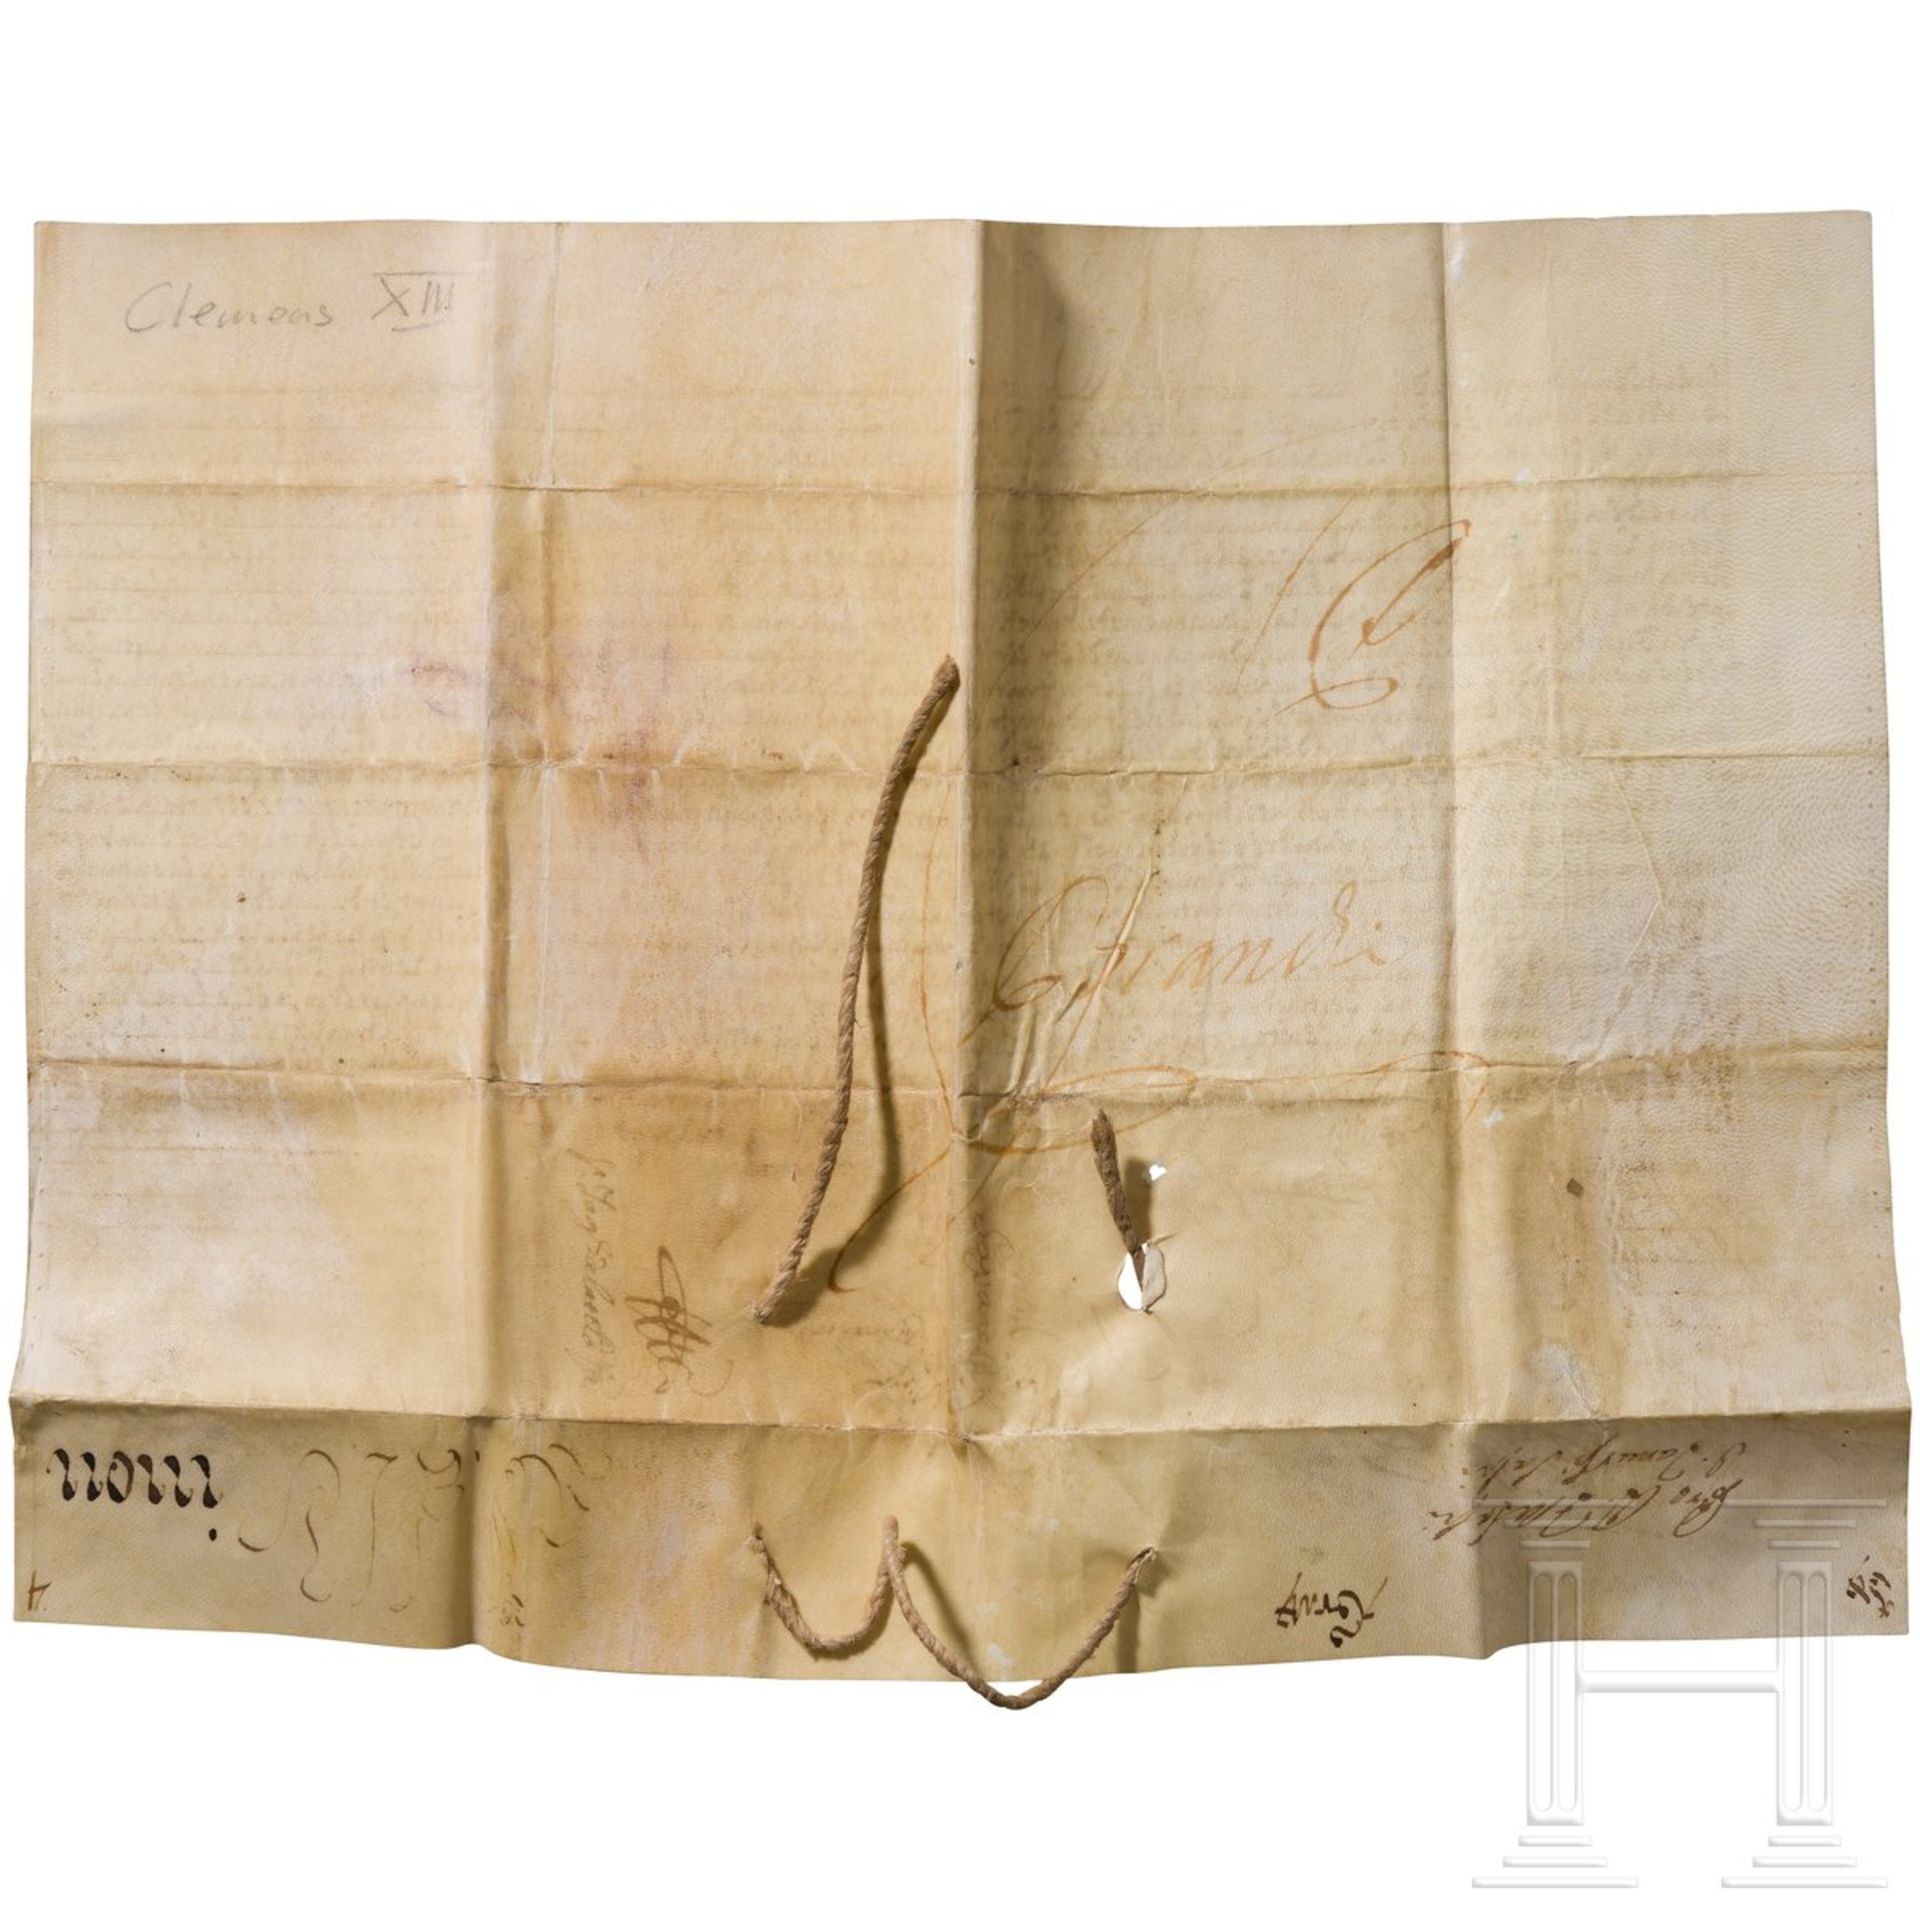 Schreiben aus der Zeit des Pontifikats Papst Clemens XIII. (1758 - 1769), Vatikan - Bild 2 aus 2